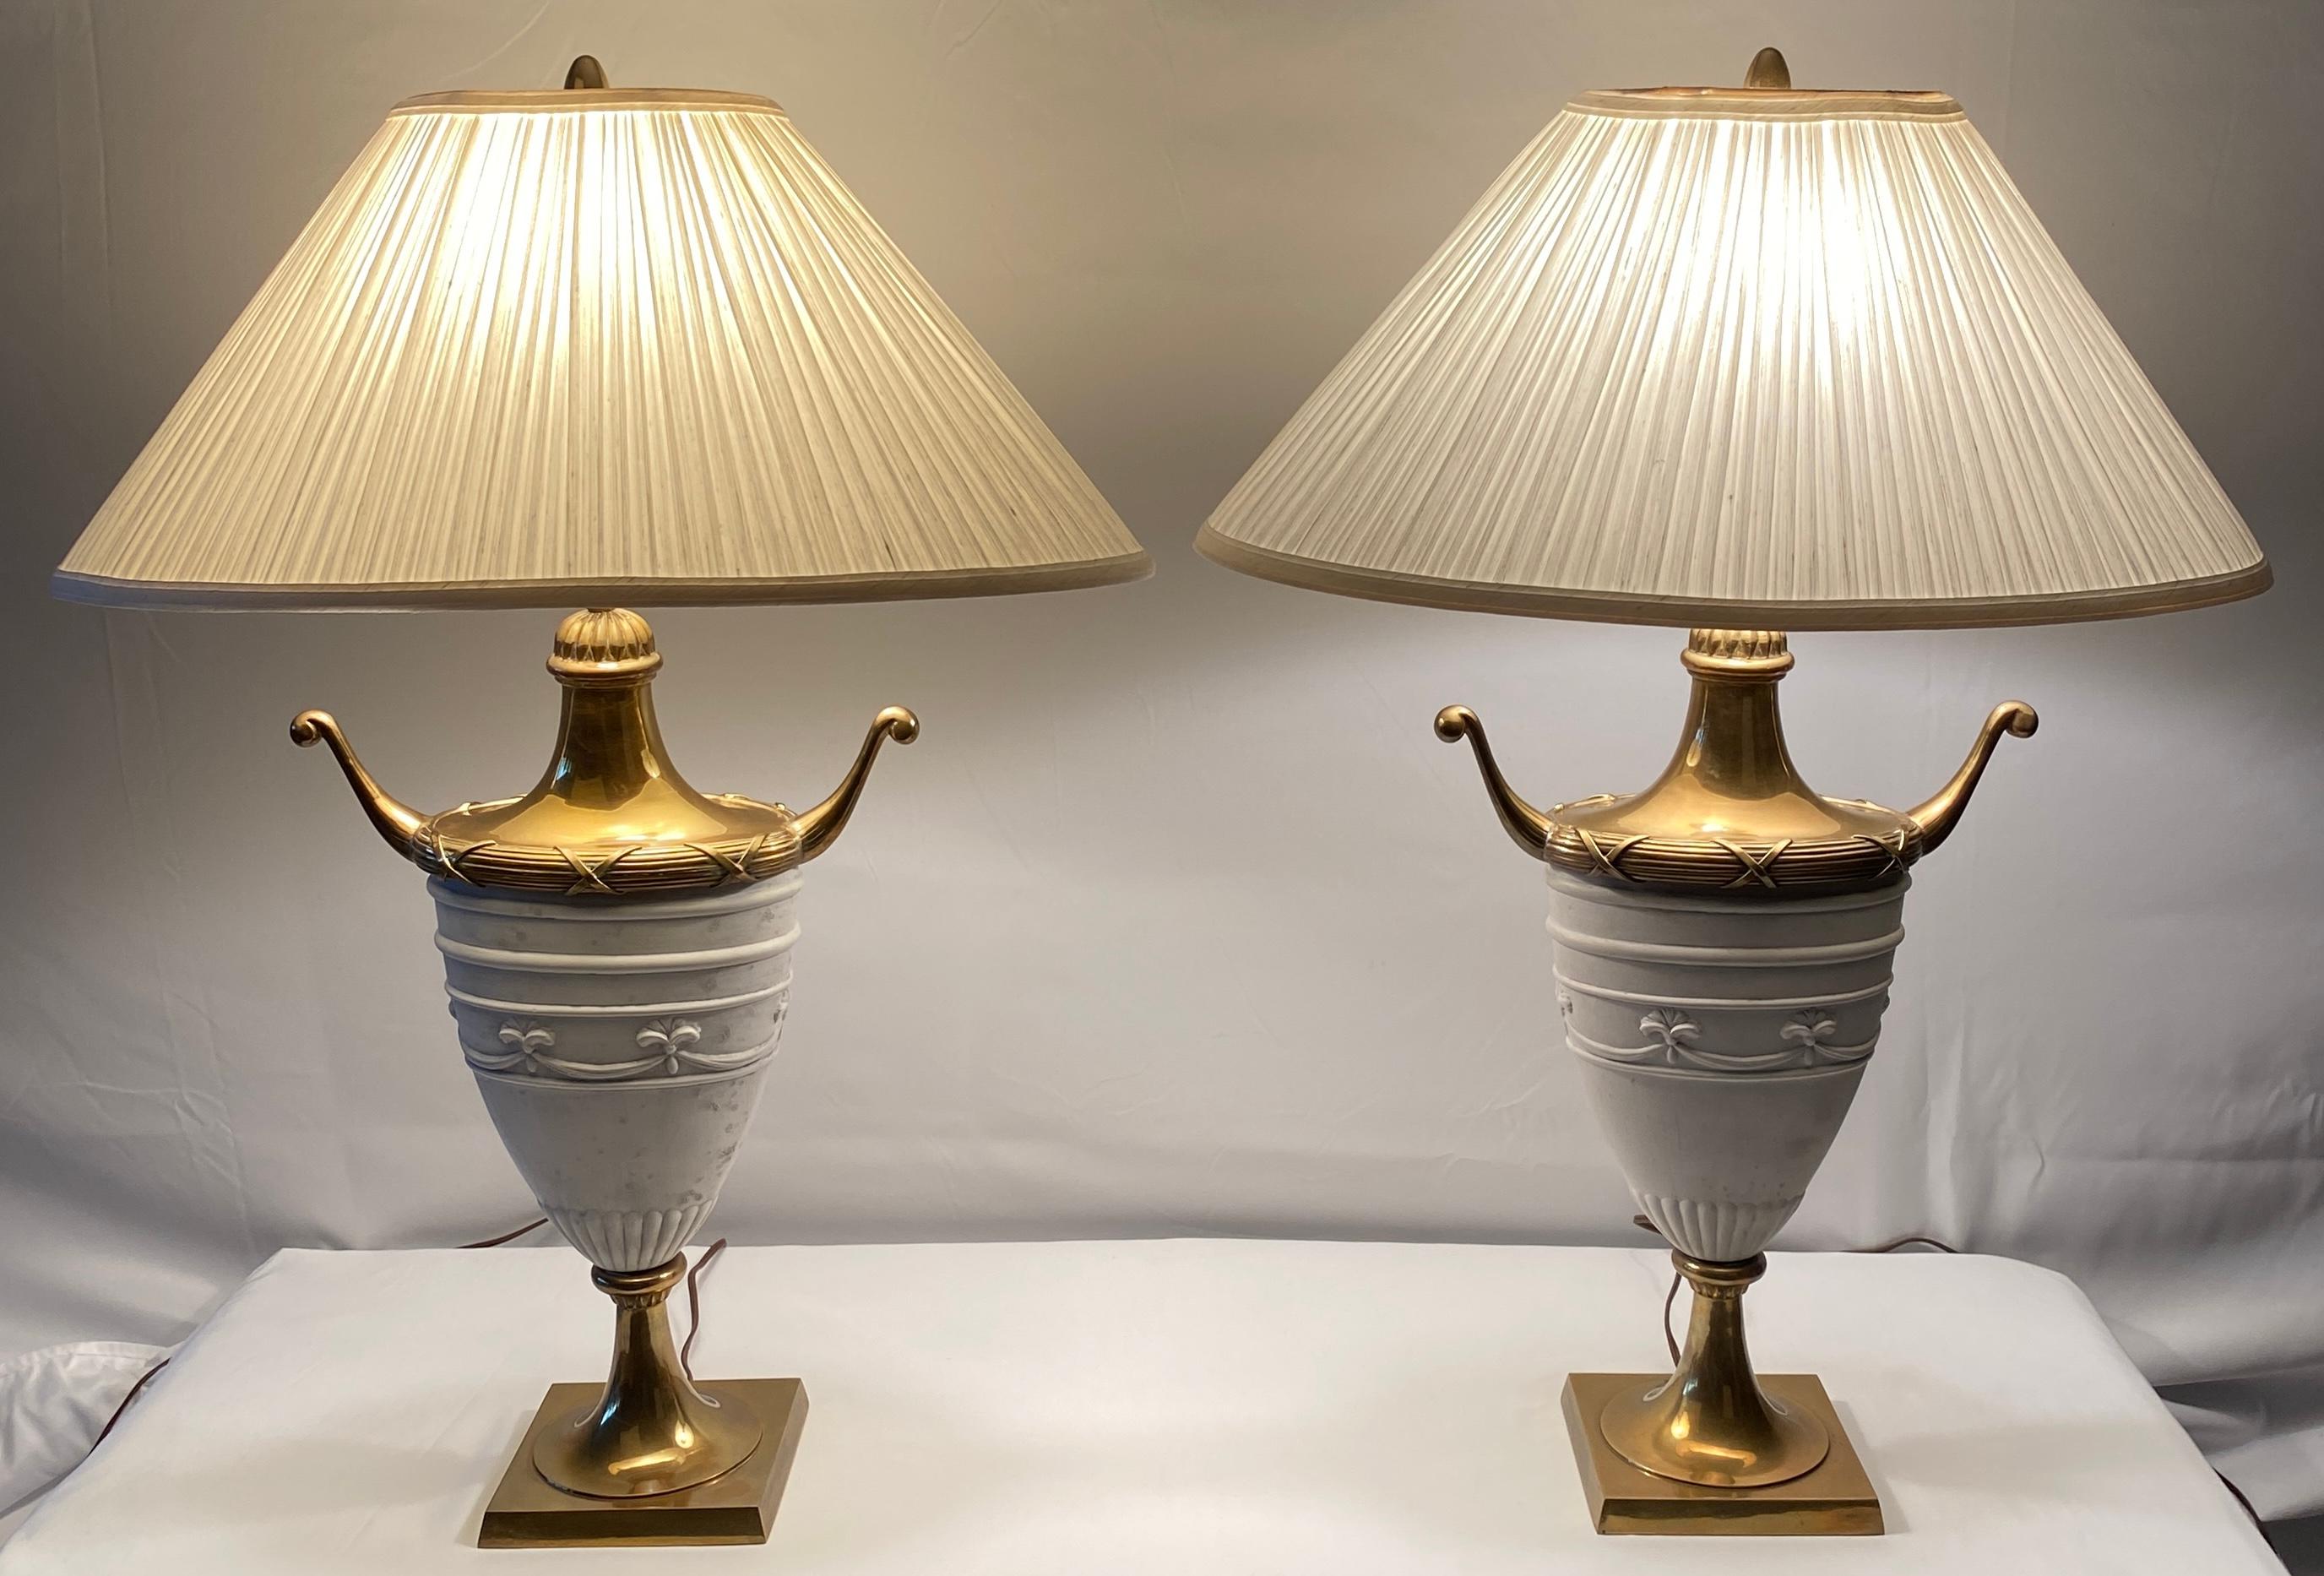 Sehr dekoratives Paar weißer Keramik-Tischlampen in Urnenform. Diese stilvollen Keramik-Tischlampen werten jeden Beistelltisch, Nachttisch, jede Kredenz oder Konsole im Wohnzimmer, Essbereich, Schlafzimmer oder Wohnbereich auf. Hergestellt in